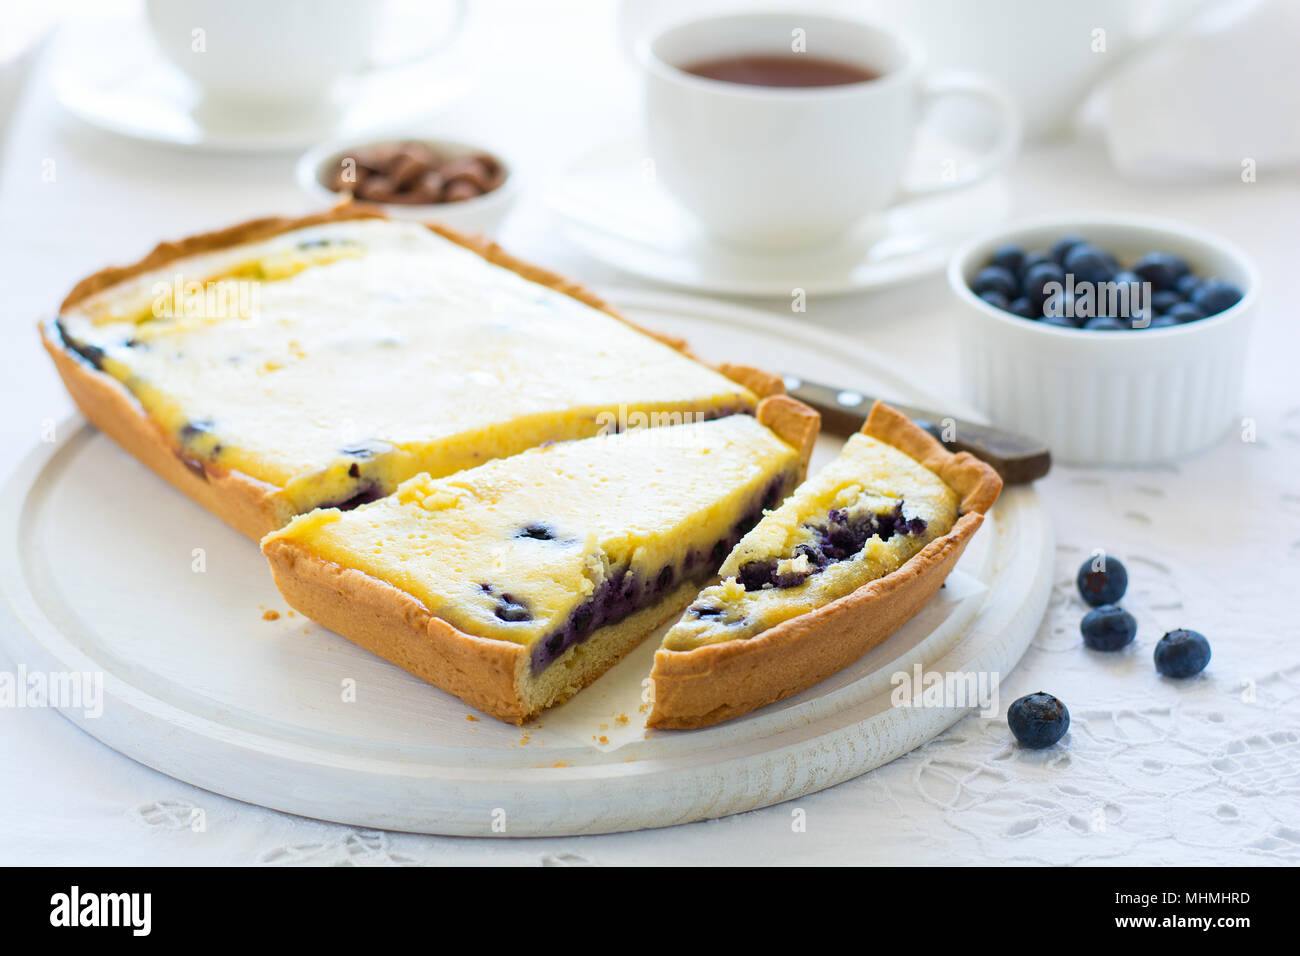 L'heure du thé. Blueberry Cheesecake maison, tasses de thé, les noix et berry sur nappe blanche Banque D'Images